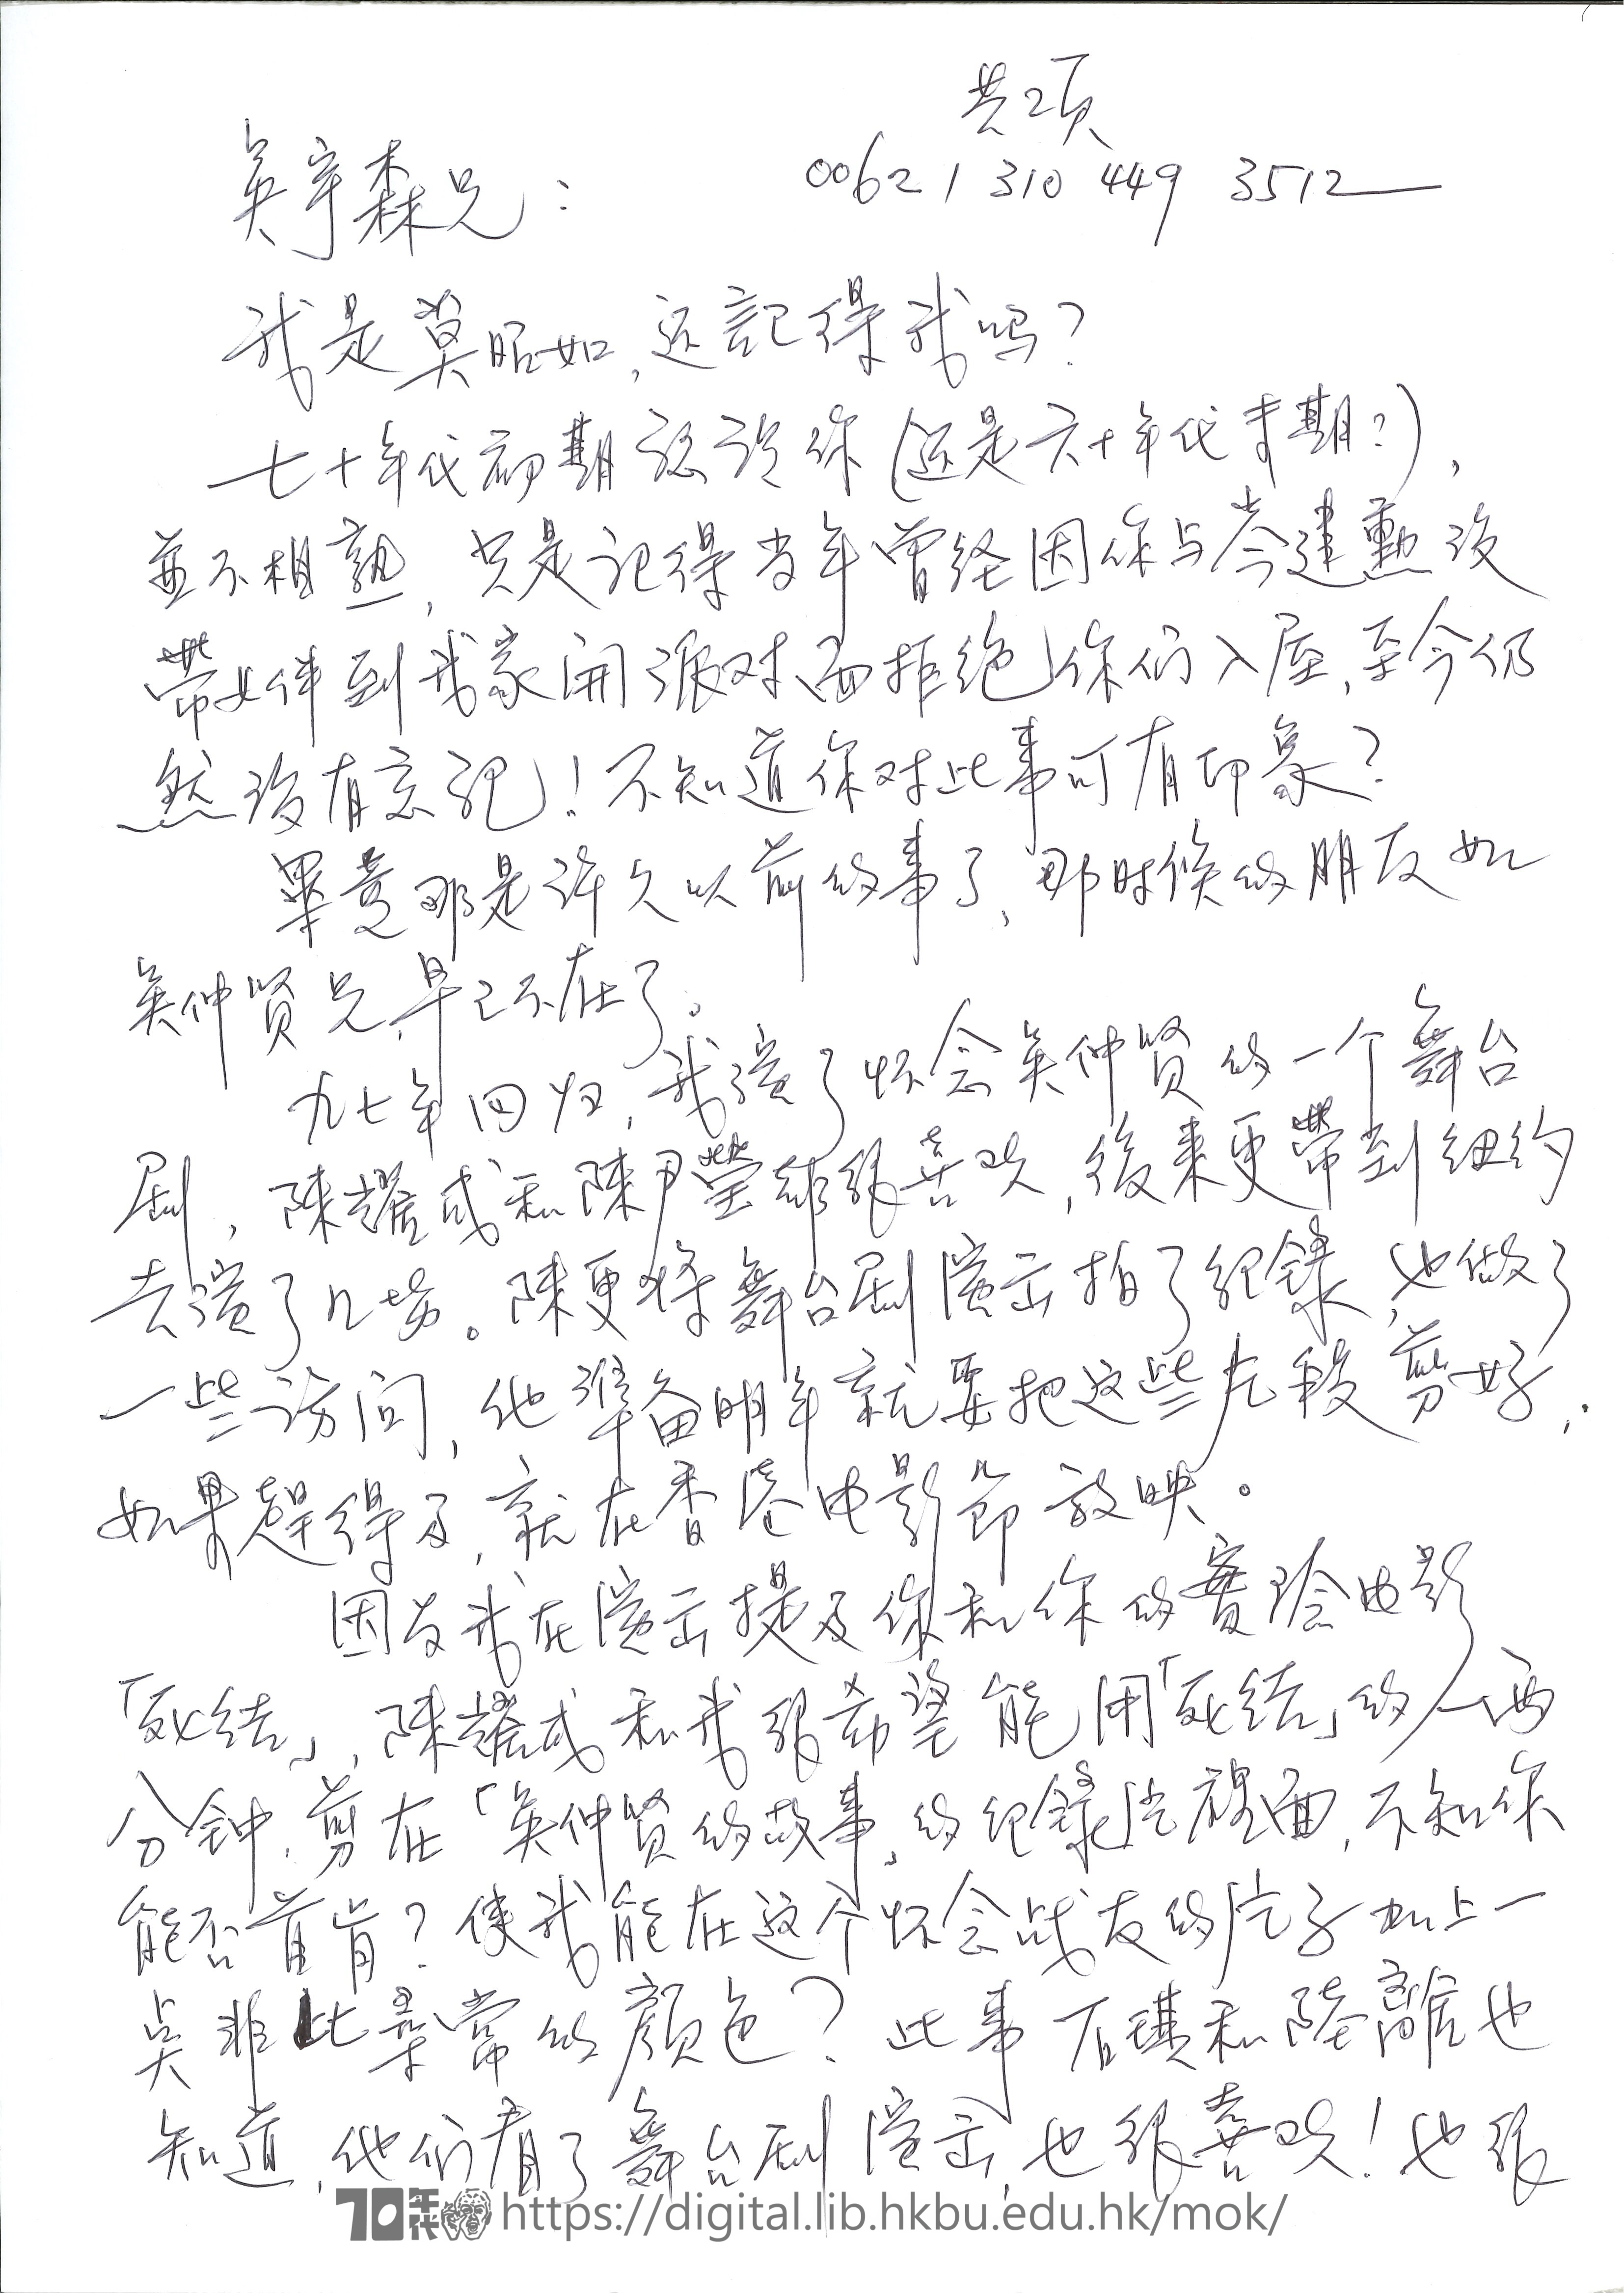   Letter from Mok Chiu Yu to John Woo MOK, Chiu Yu 